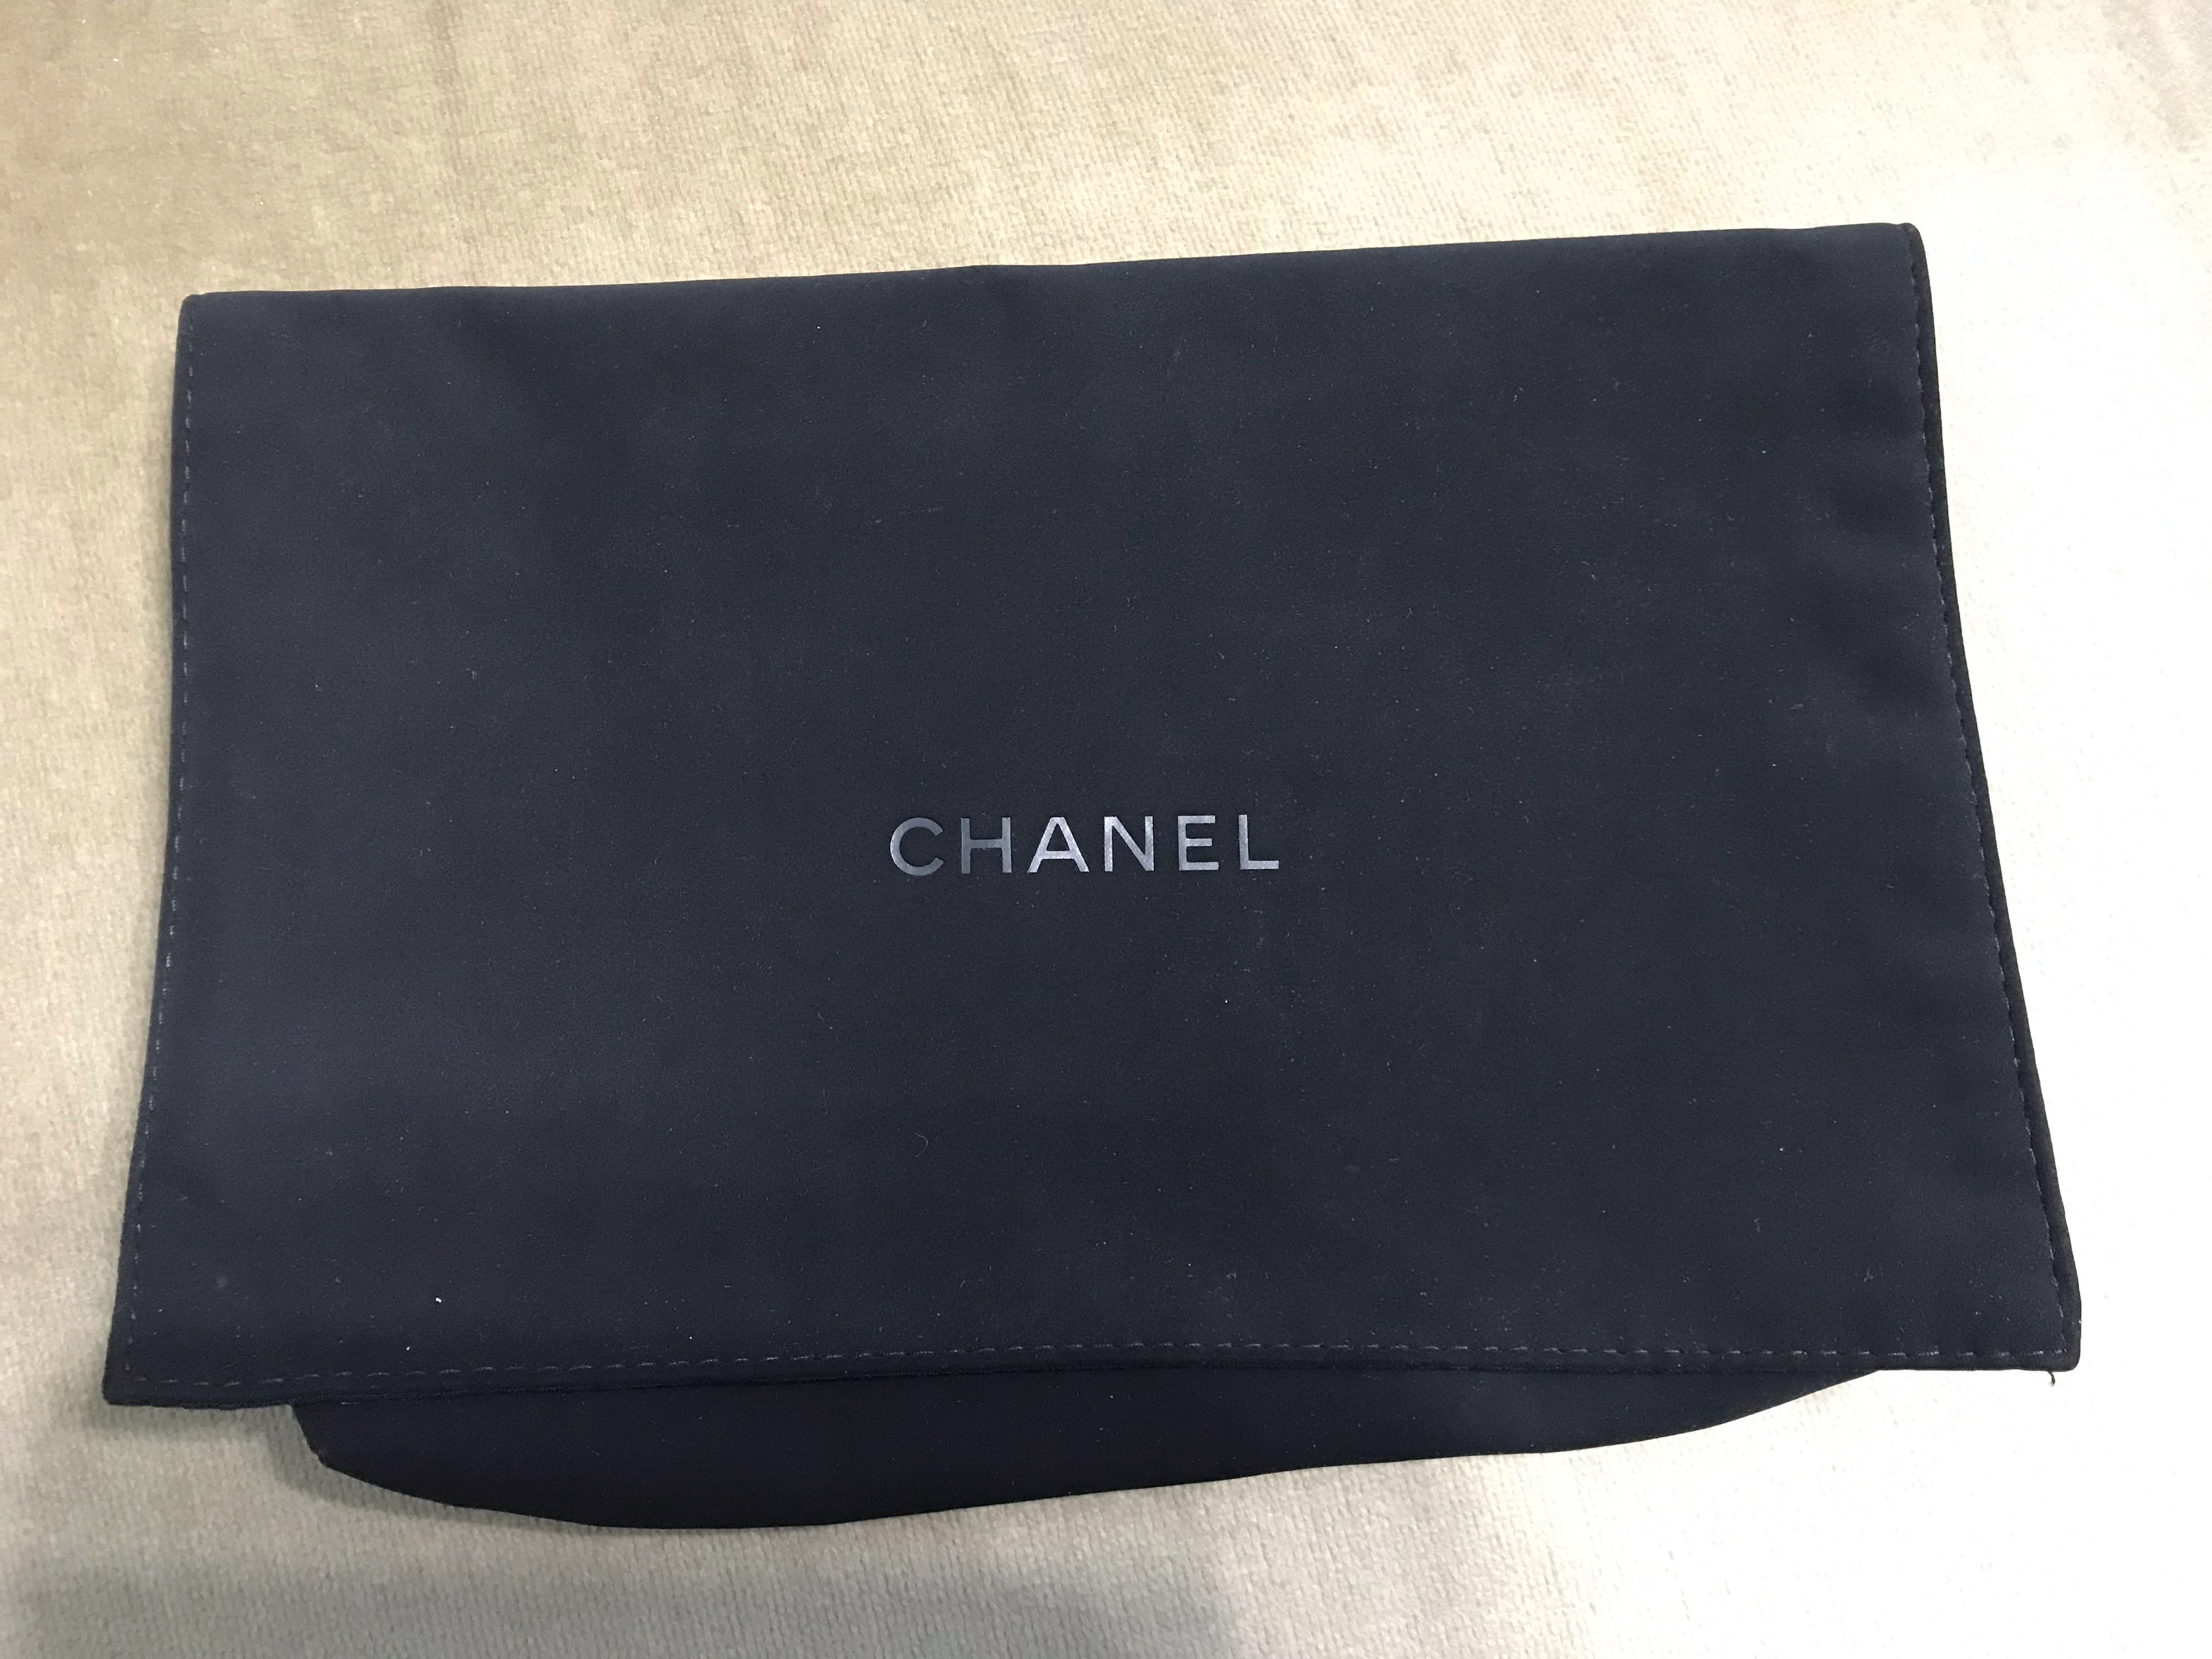 Chanel woc dust bag